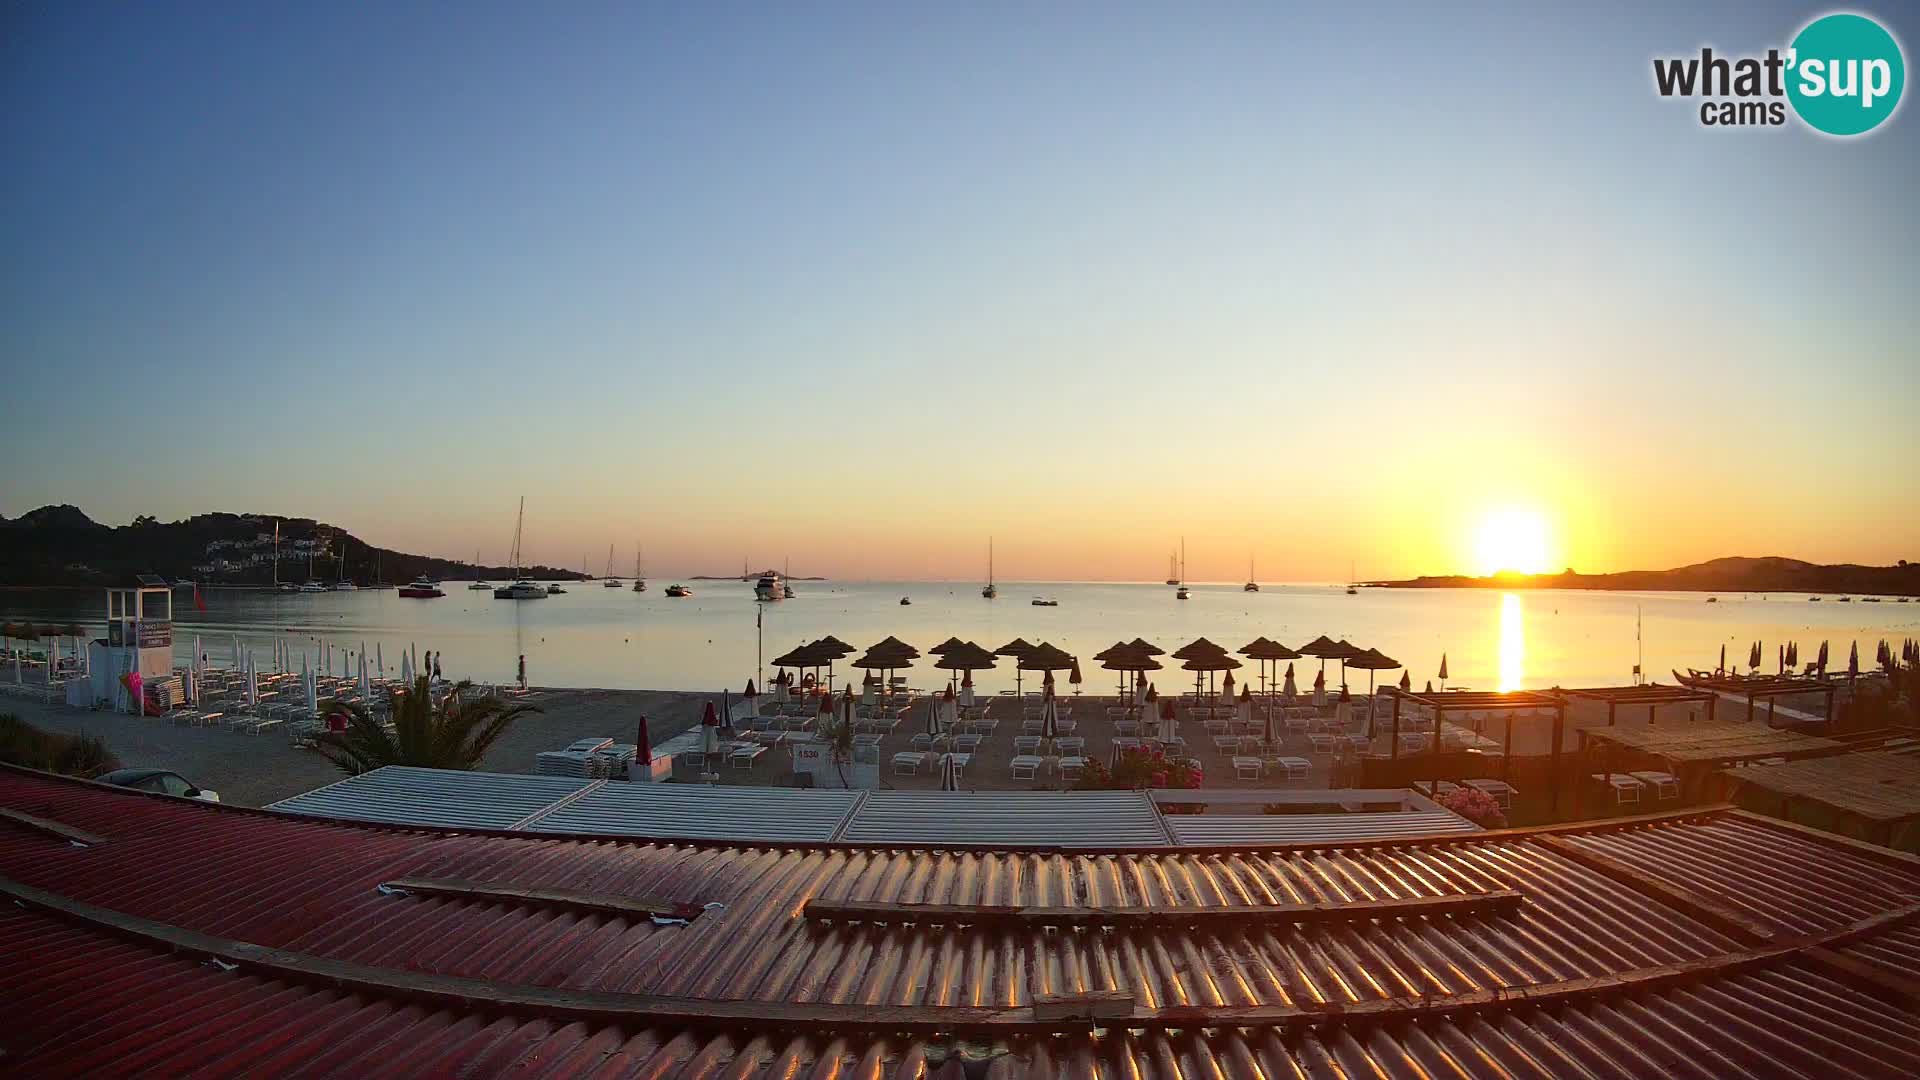 Webcam spiaggia Marinella – Porto Rotondo live cam Olbia – Sardegna